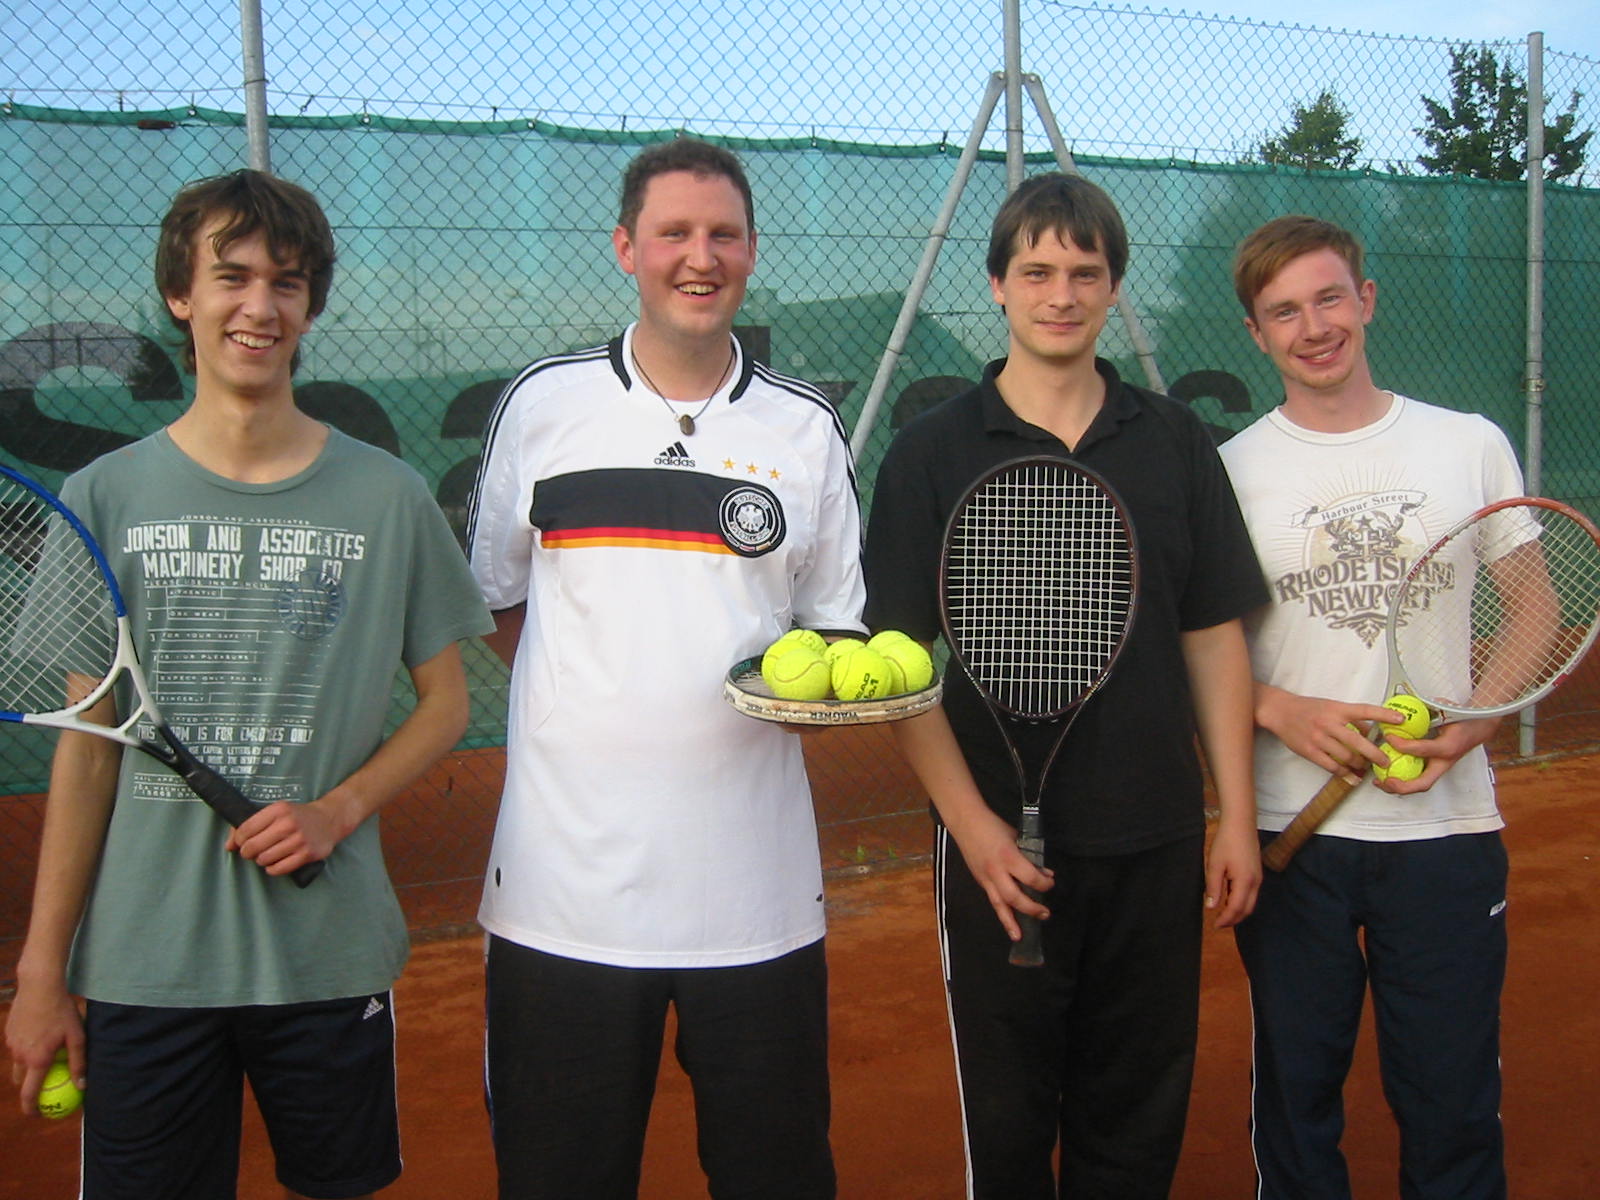 Die Teilnehmer am Tennisturnier